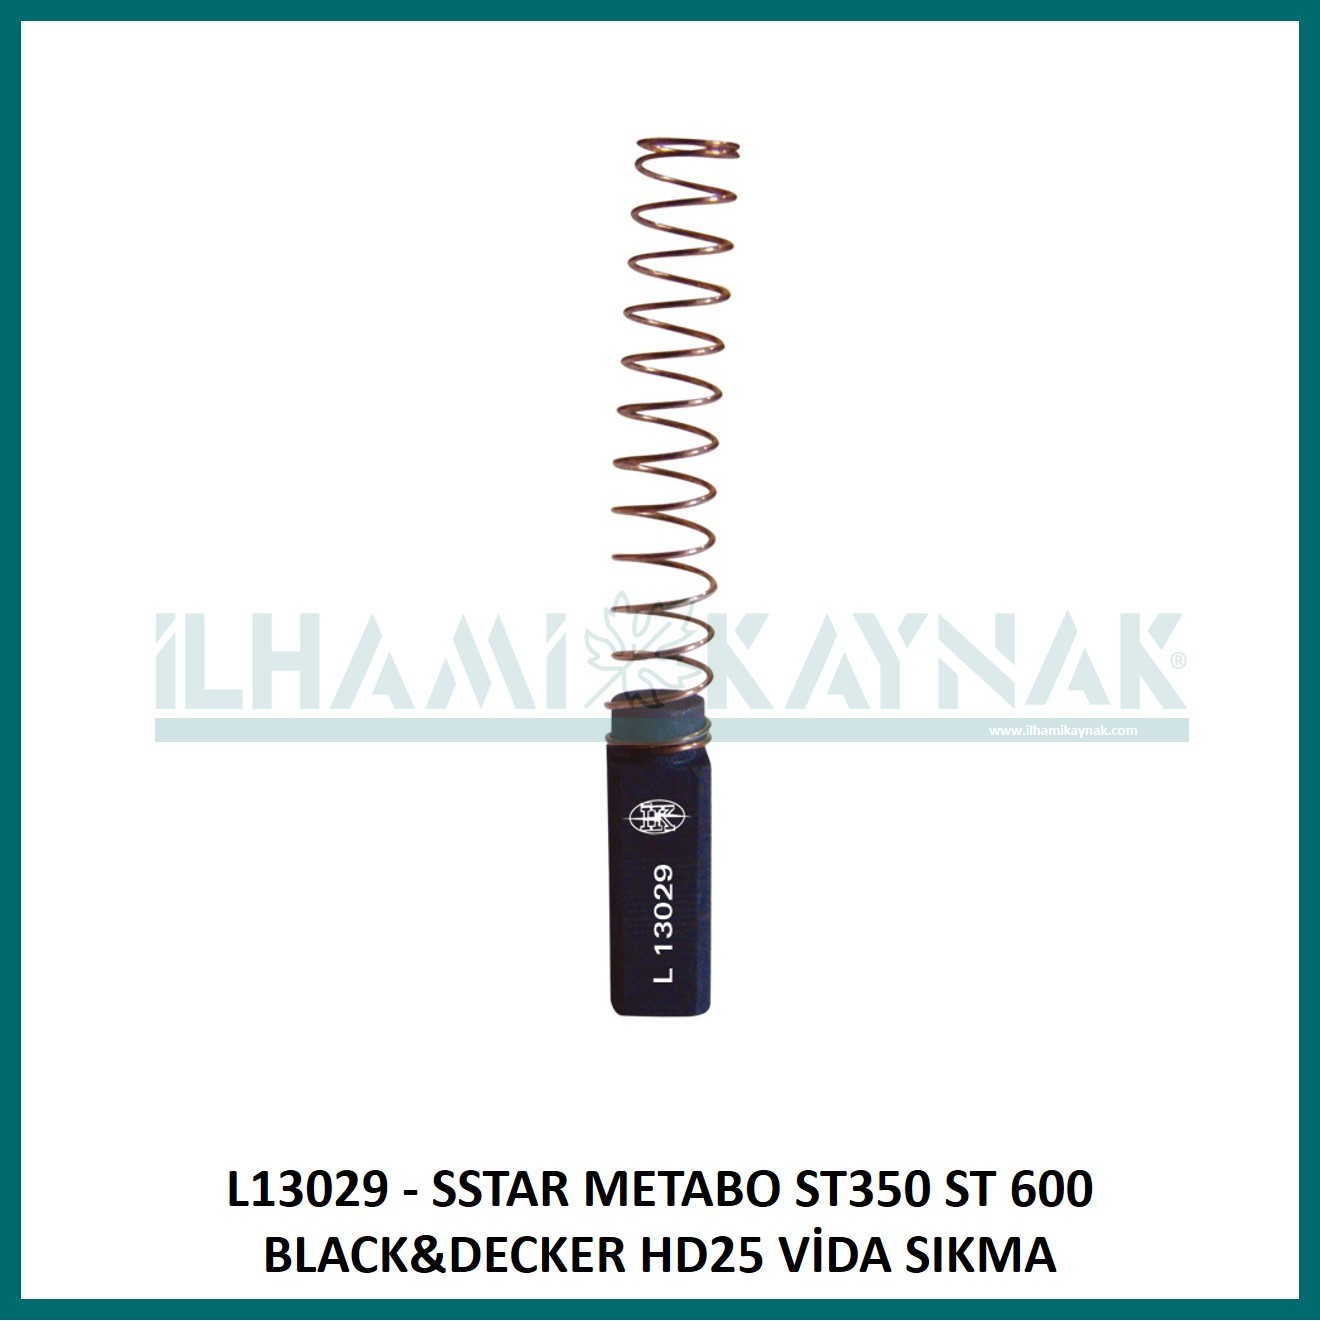 L13029 - SSTAR METABO ST350 ST 600 BLACK&DECKER HD25 VİDA SIKMA -6*6*18 mm - Minimum Satın Alım: 10 Adet